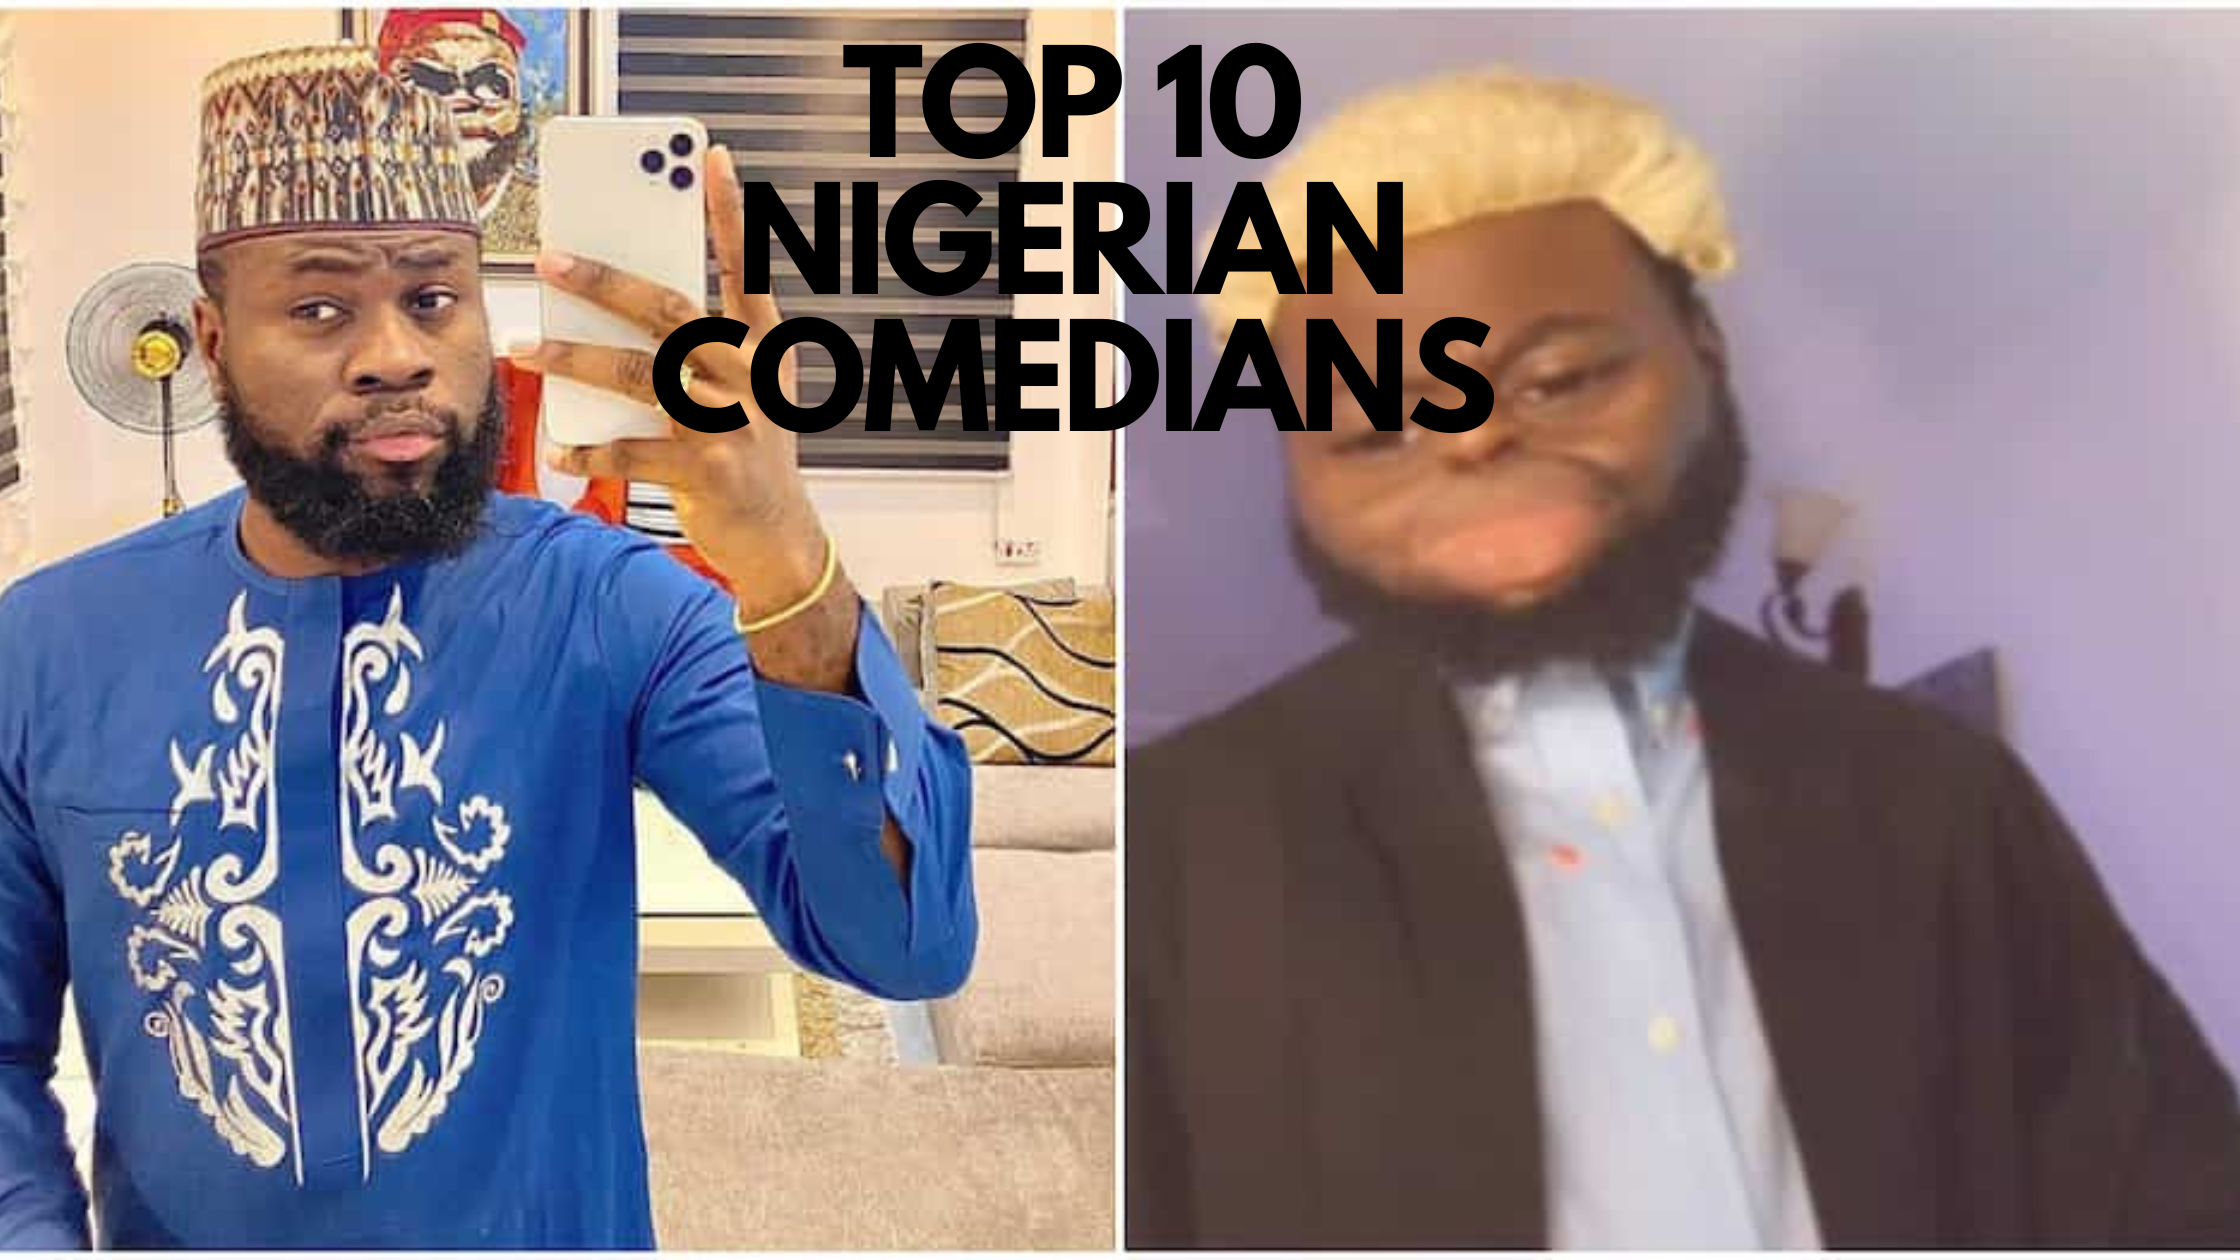 Top 10 Nigerian comedians